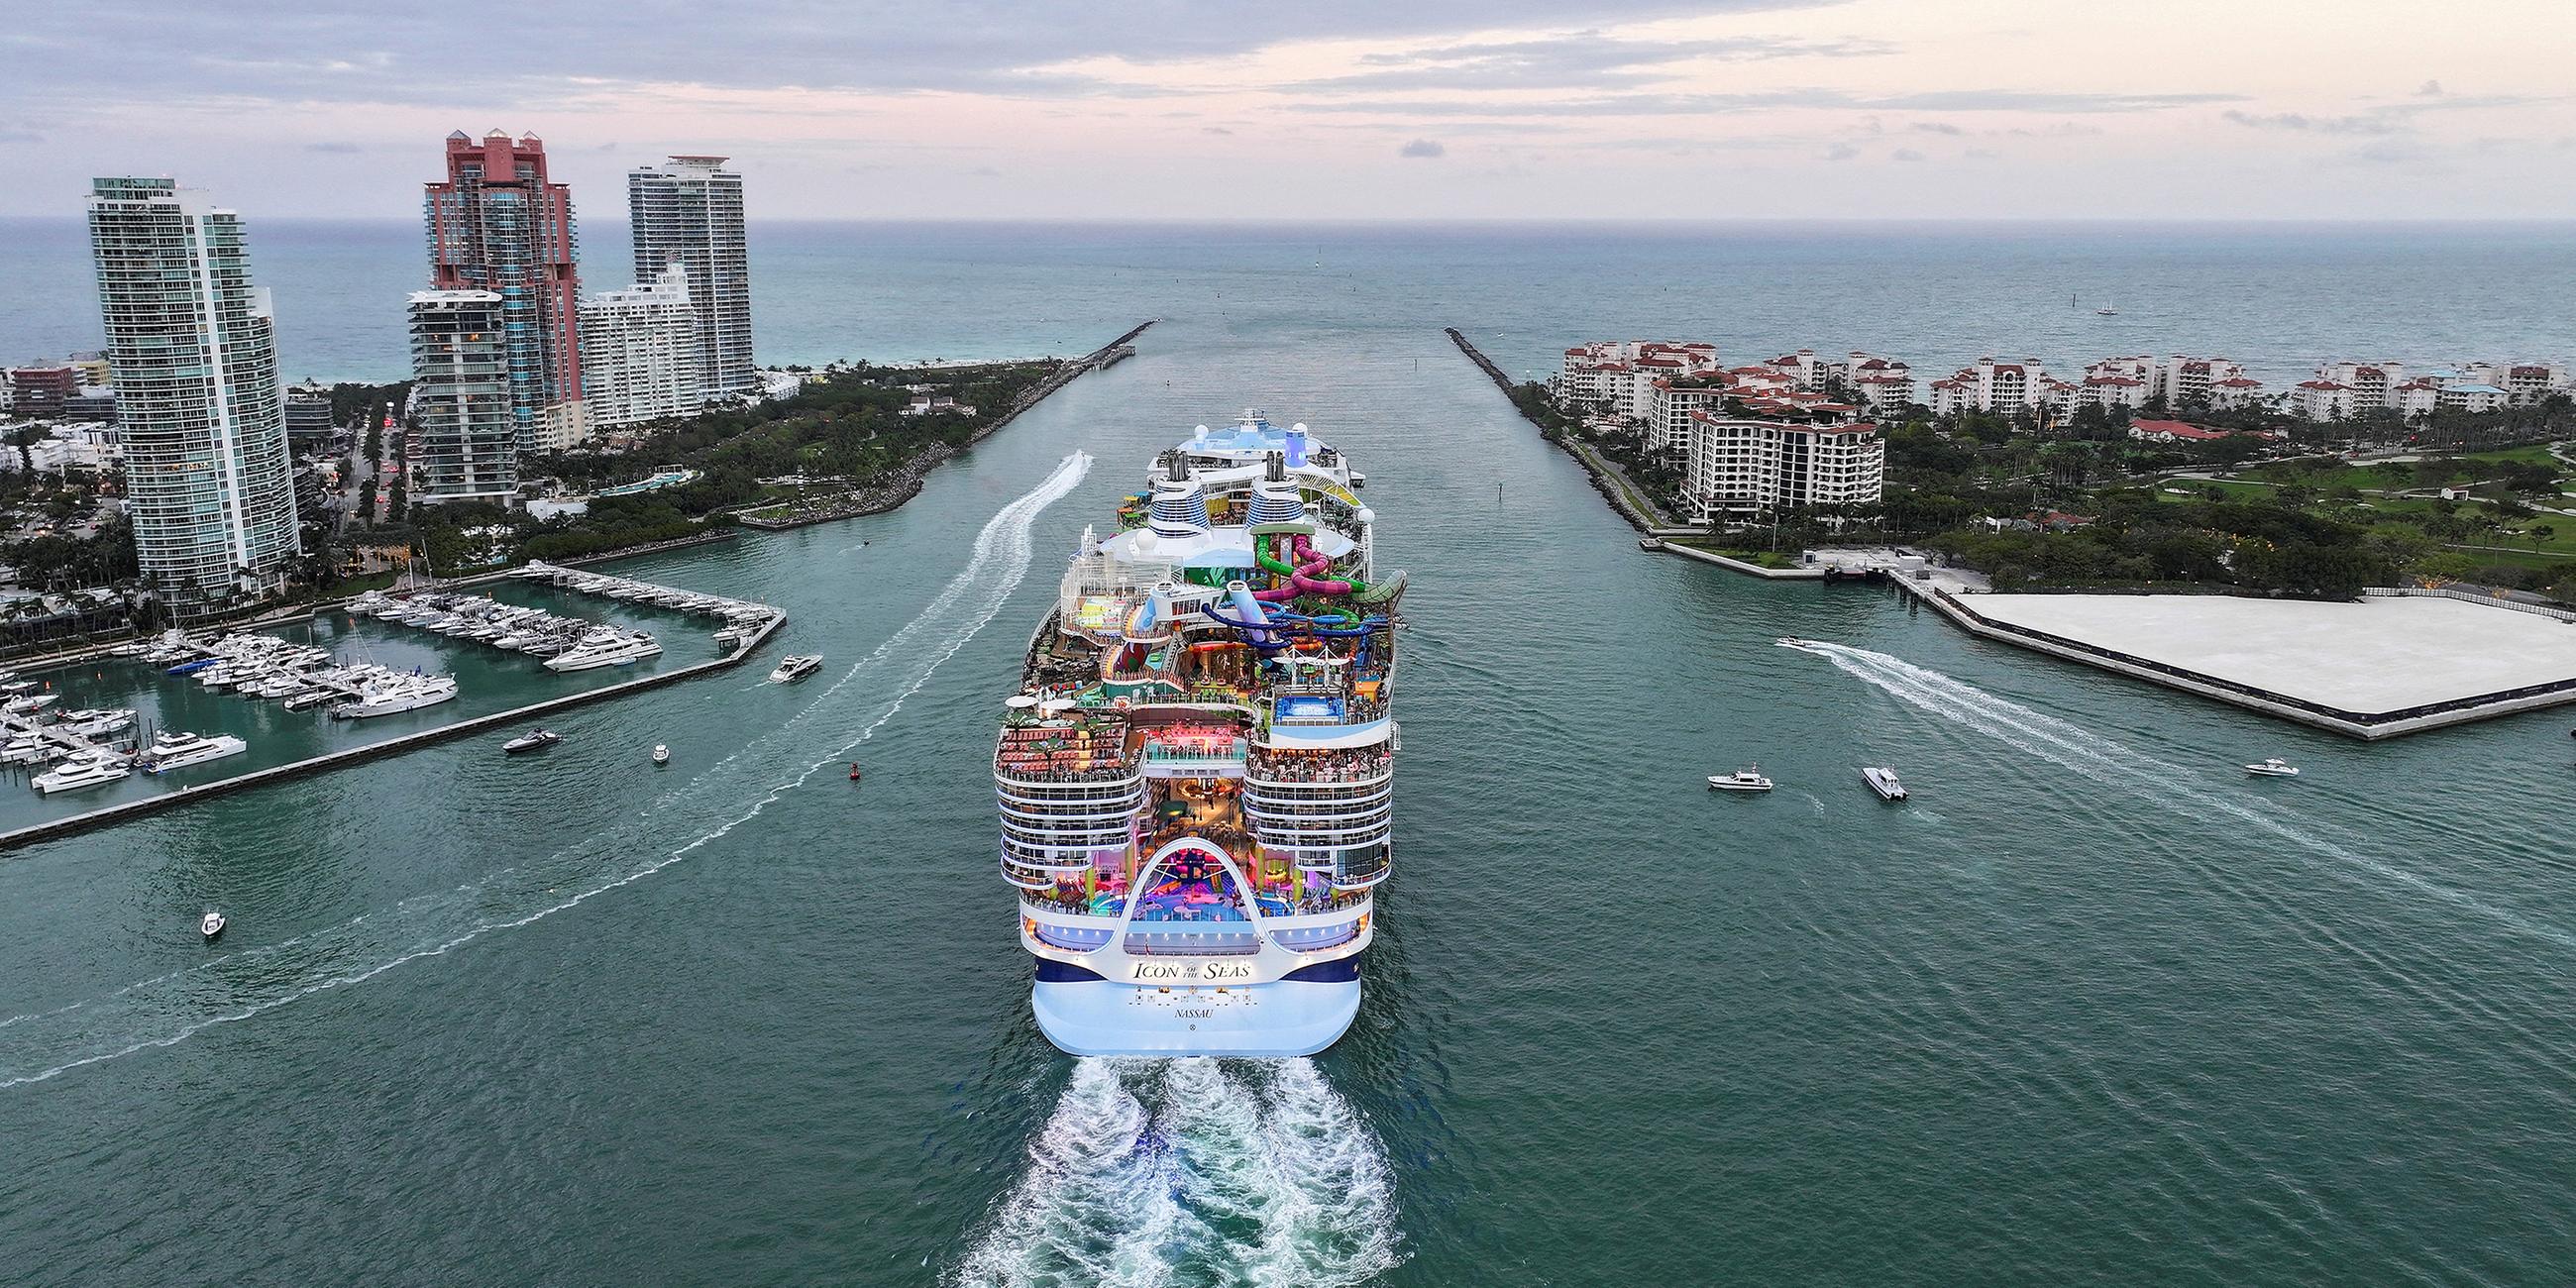 Kreuzfahrtschiff Icon of the sea verlässt Hafen von Miami, Florida